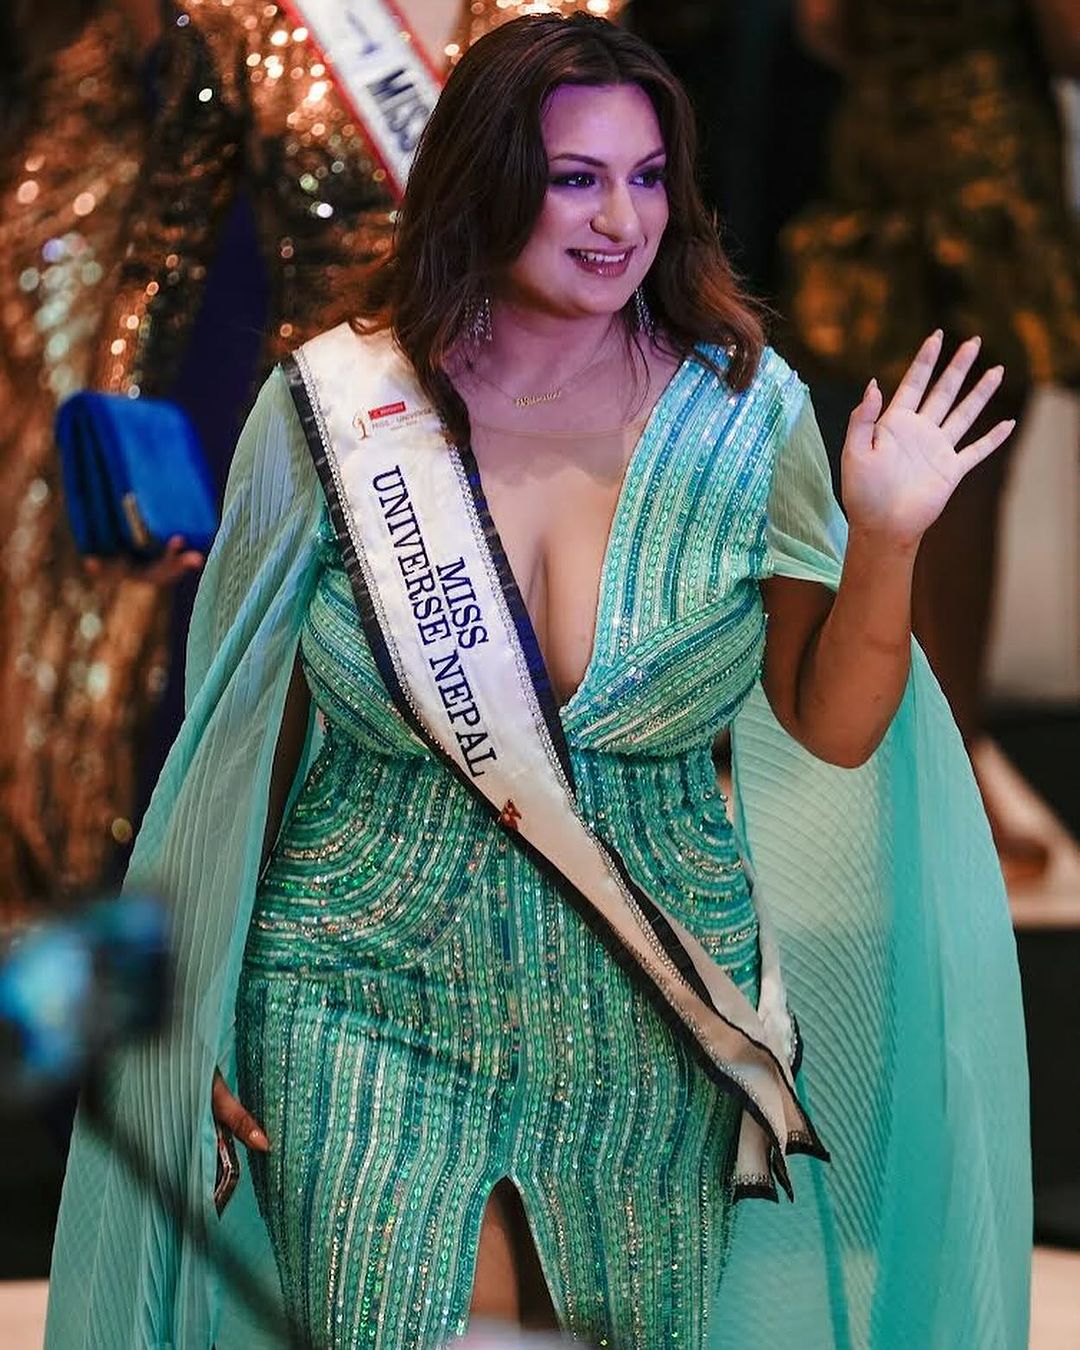 Впервые в истории «Мисс Вселенной» к участию в конкурсе допустили модель плюс-сайз